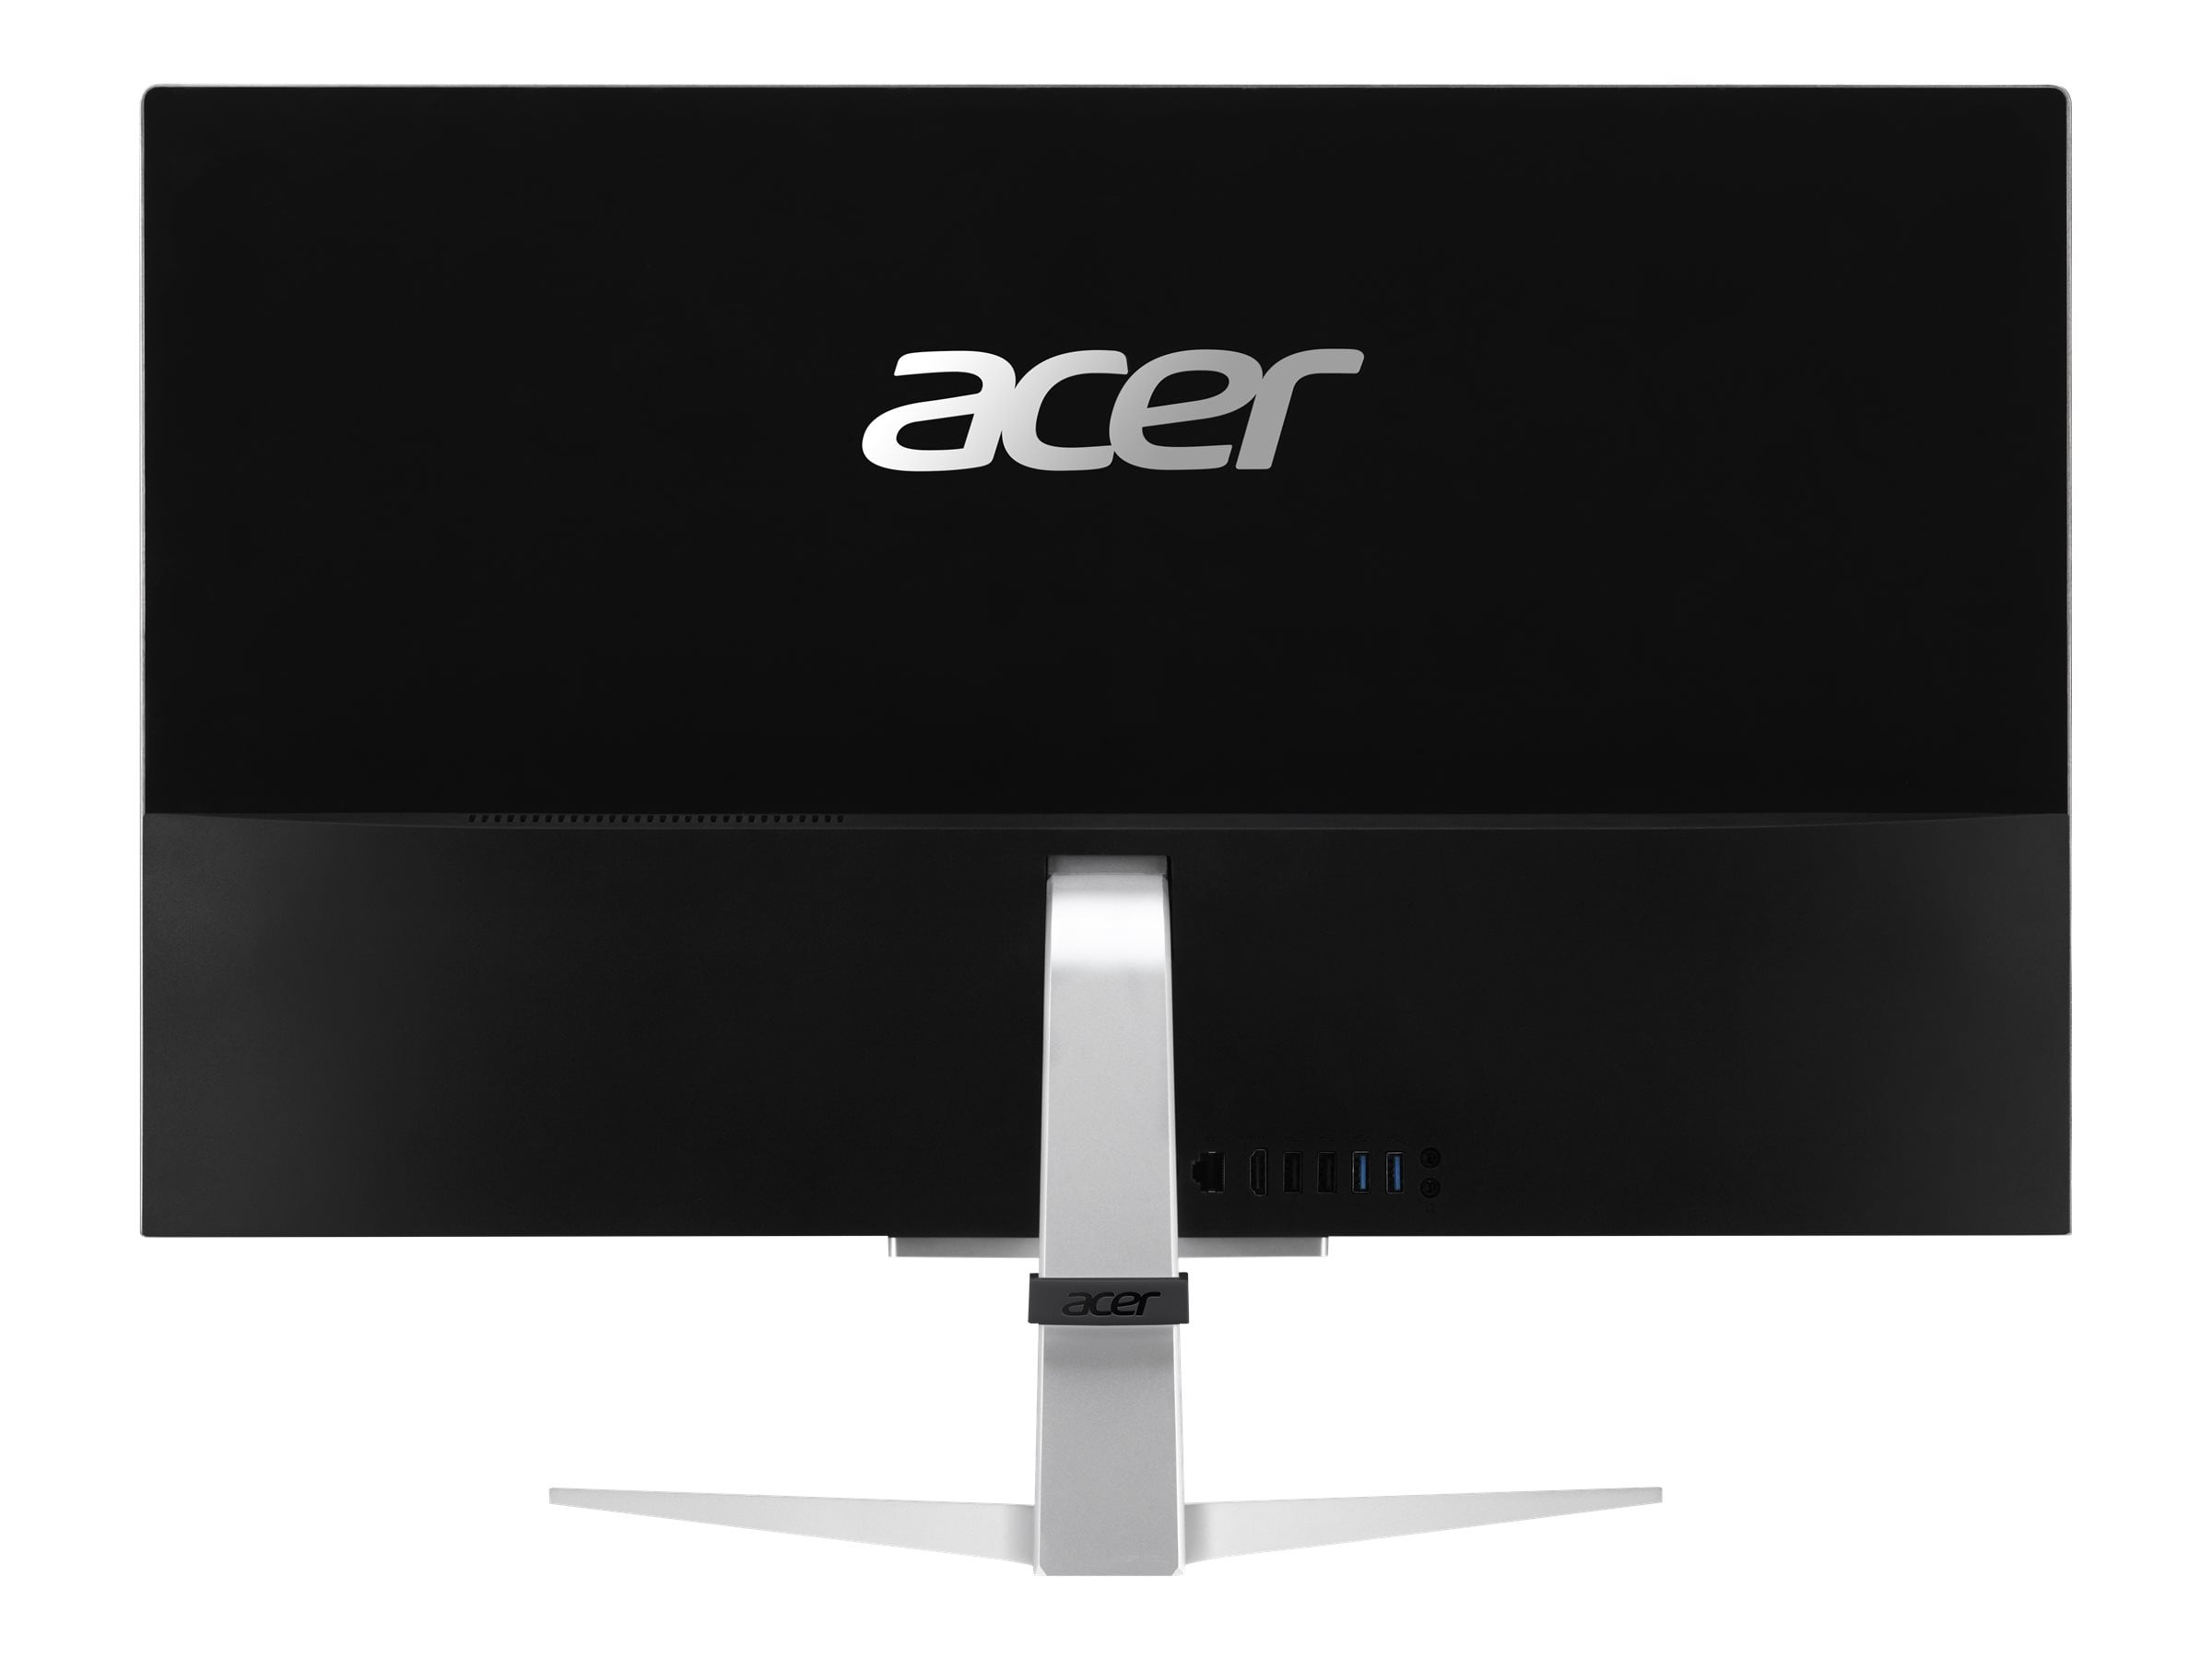 Acer Aspire C 27 C27-962 - All-in-one - Core i5 1035G1 / 1 GHz - RAM 12 GB  - SSD 512 GB - GF MX130 - GigE, 802.11ac Wave 2 - WLAN: 802.11a/b/g/n/ac 